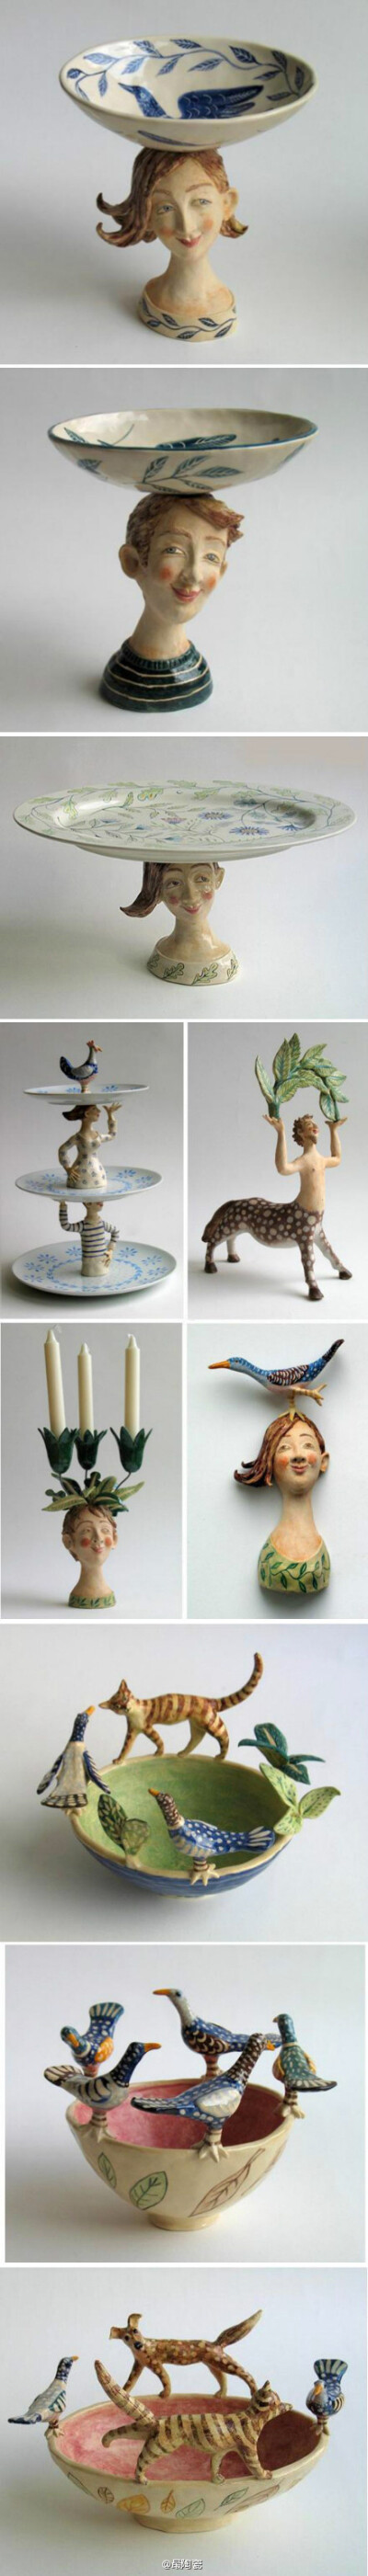 英国艺术家Helen Kemp的陶瓷作品